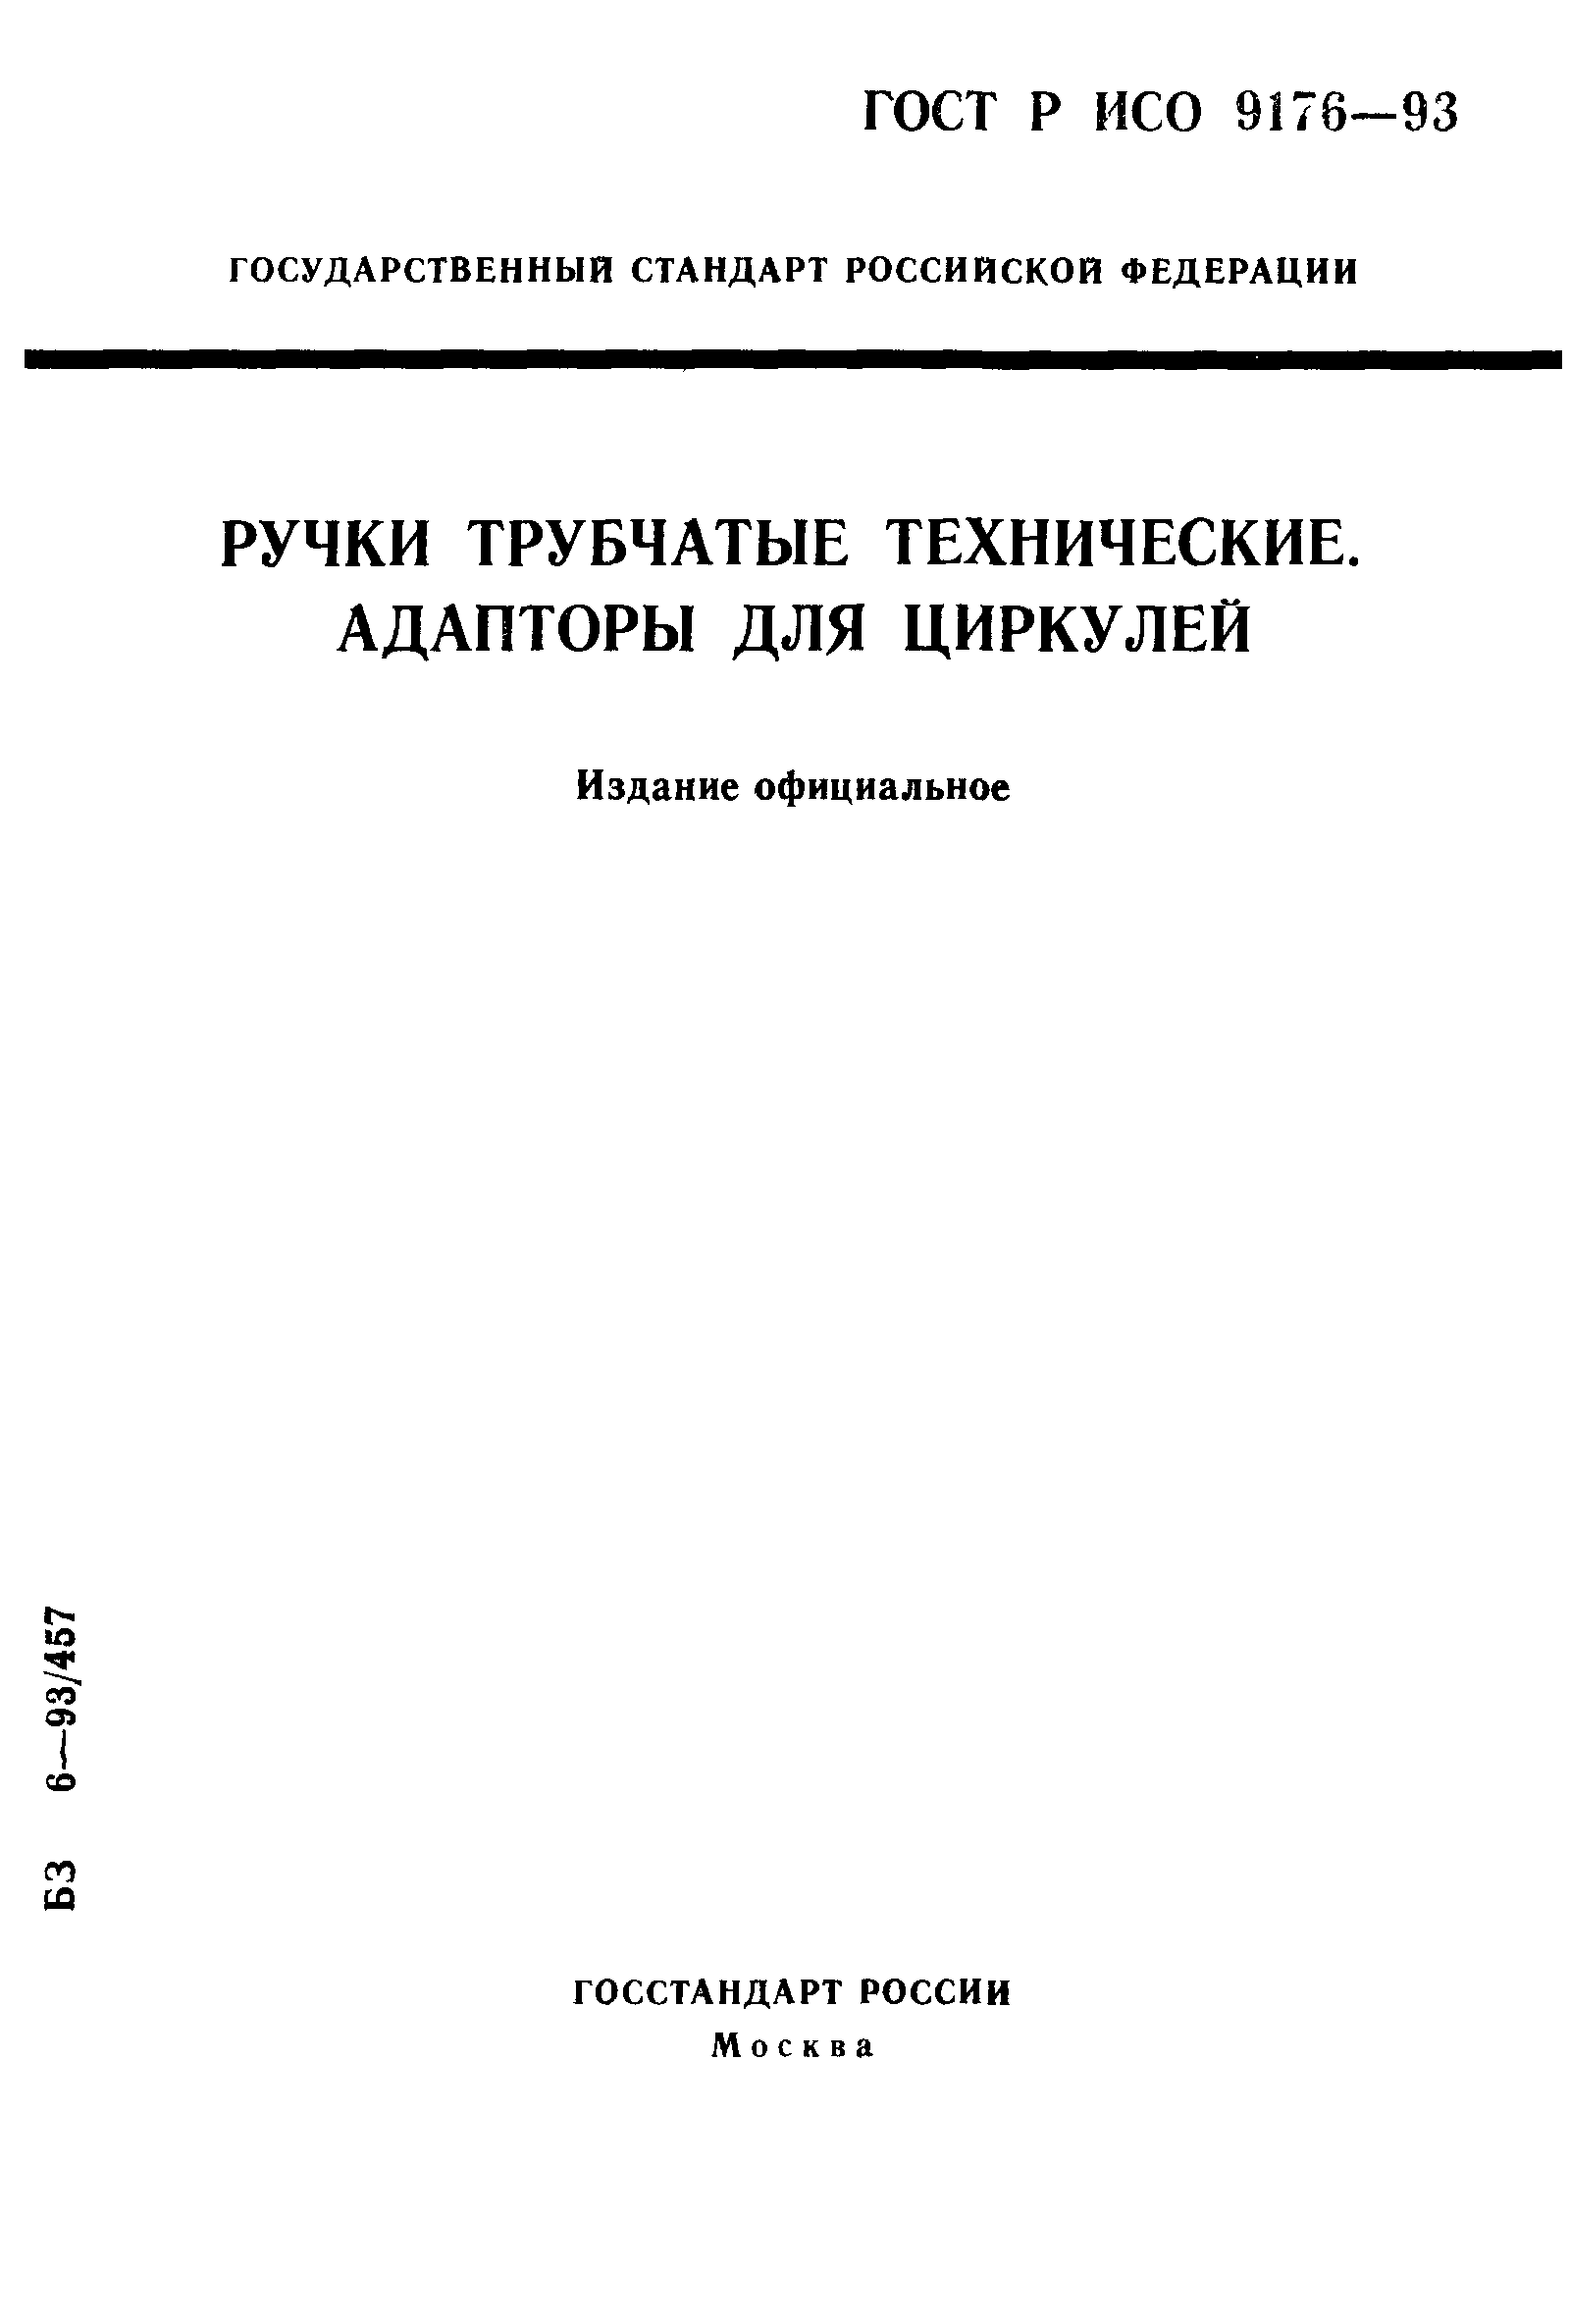 ГОСТ Р ИСО 9176-93